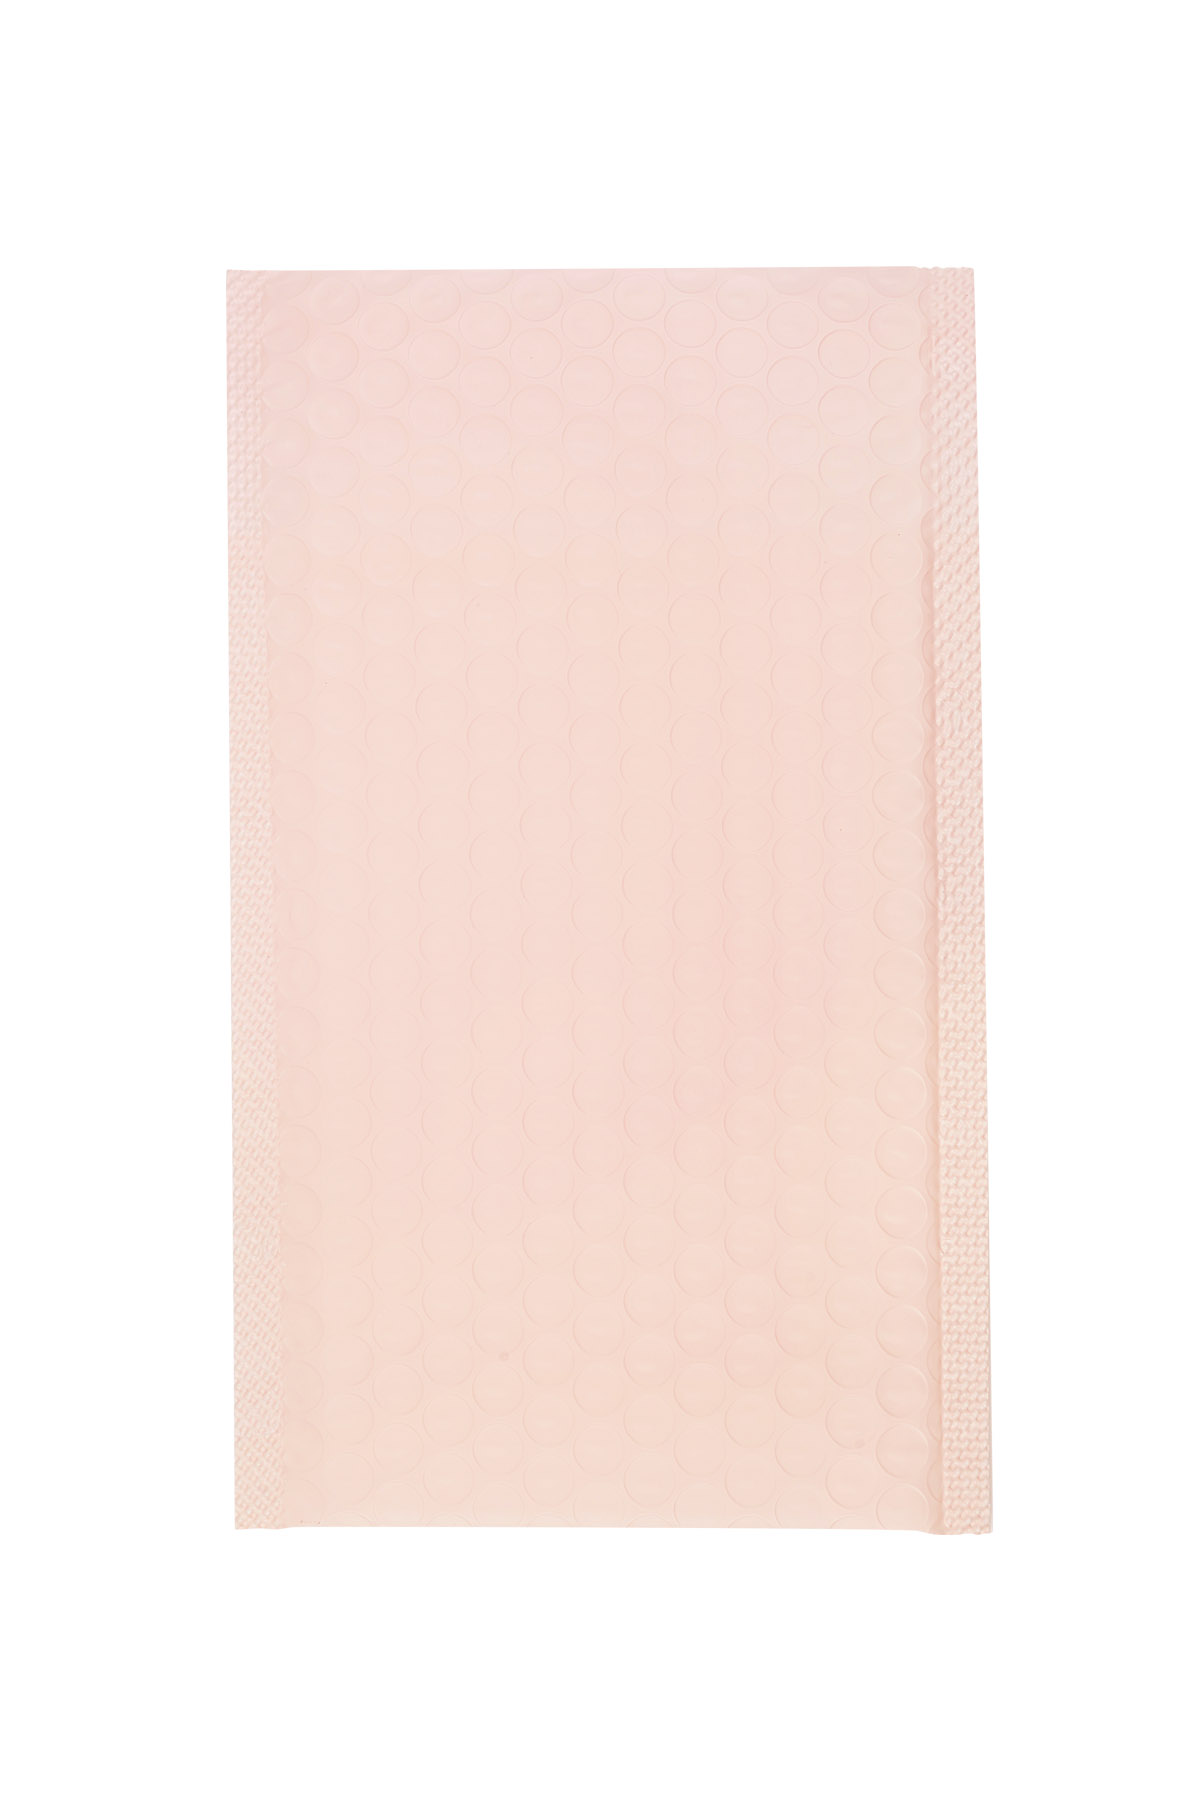 Mailing bag bubble - pastel pink Plastic 